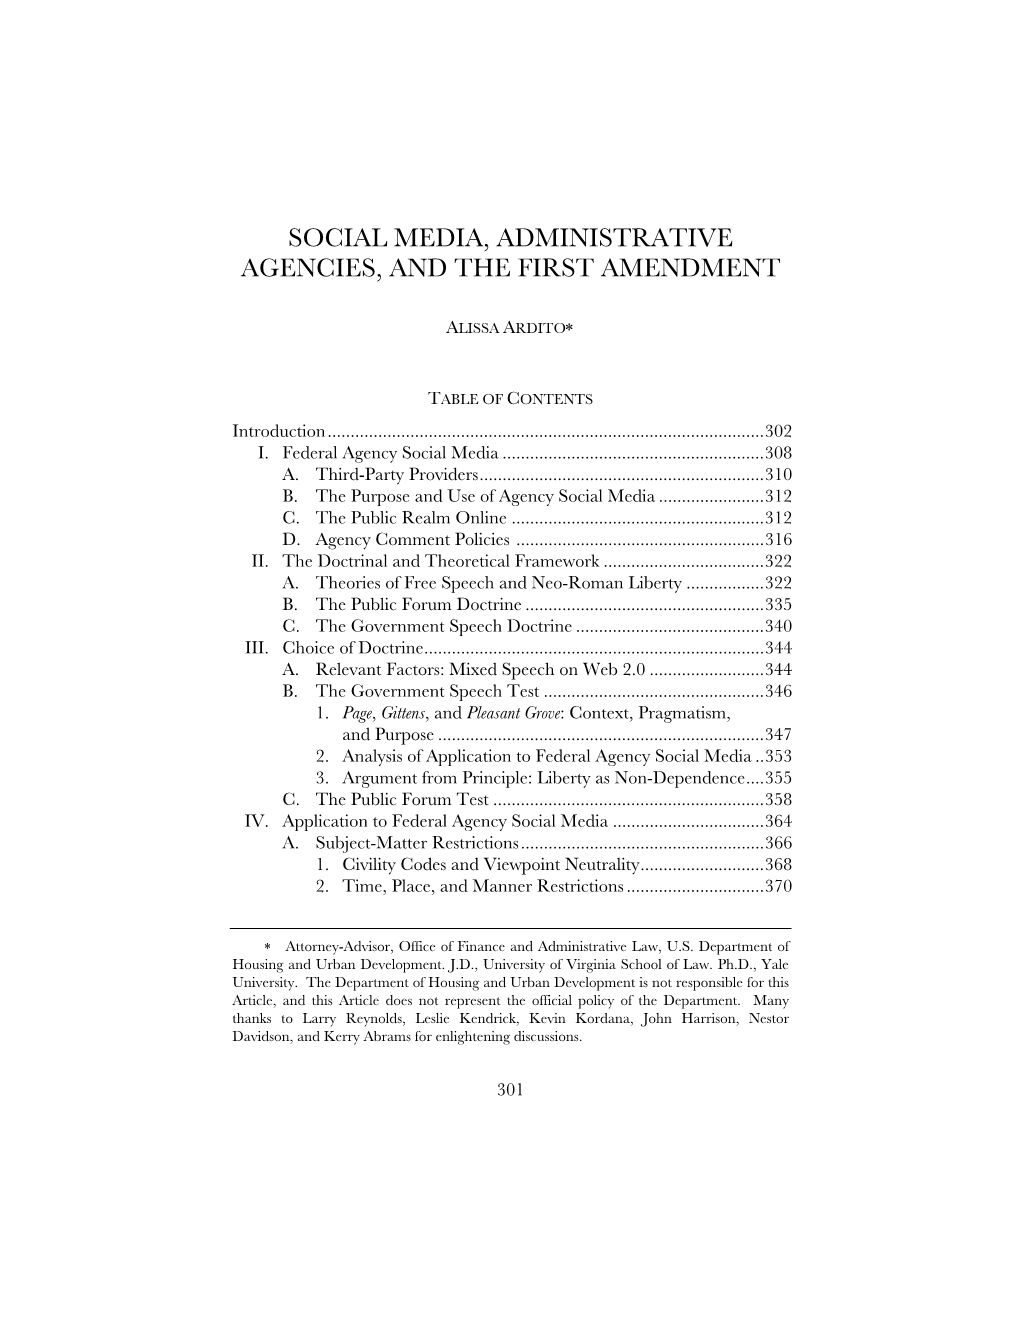 Agencies, Social Media, First Amendment.Pdf